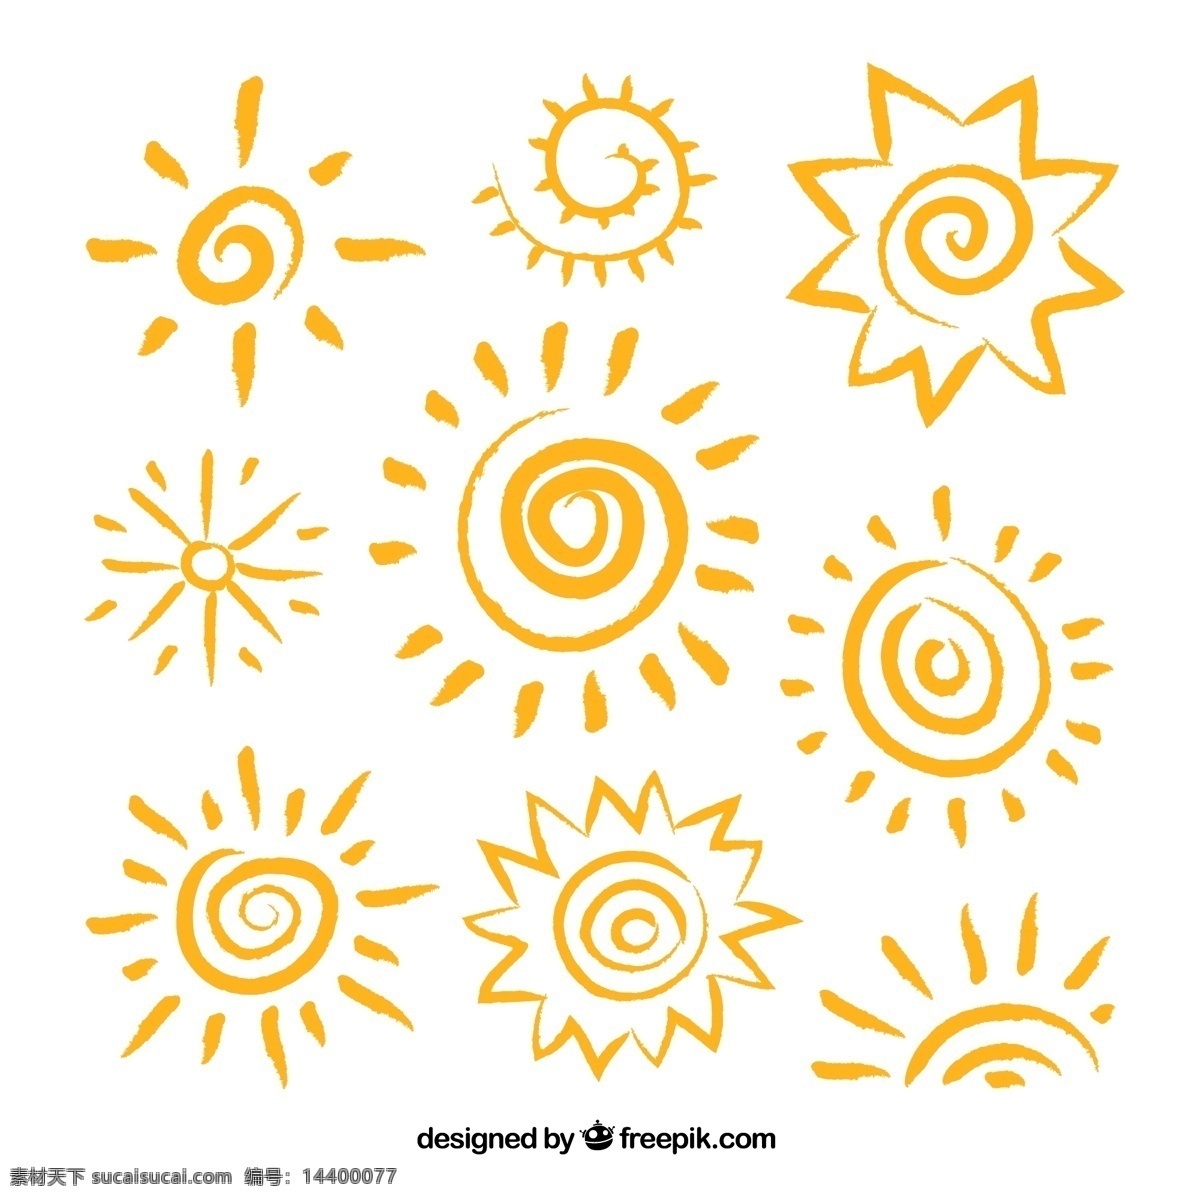 橙色 手绘 太阳 矢量 阳光 夏季 夏天 夏日 插画 背景 海报 画册 经典实用 卡通设计